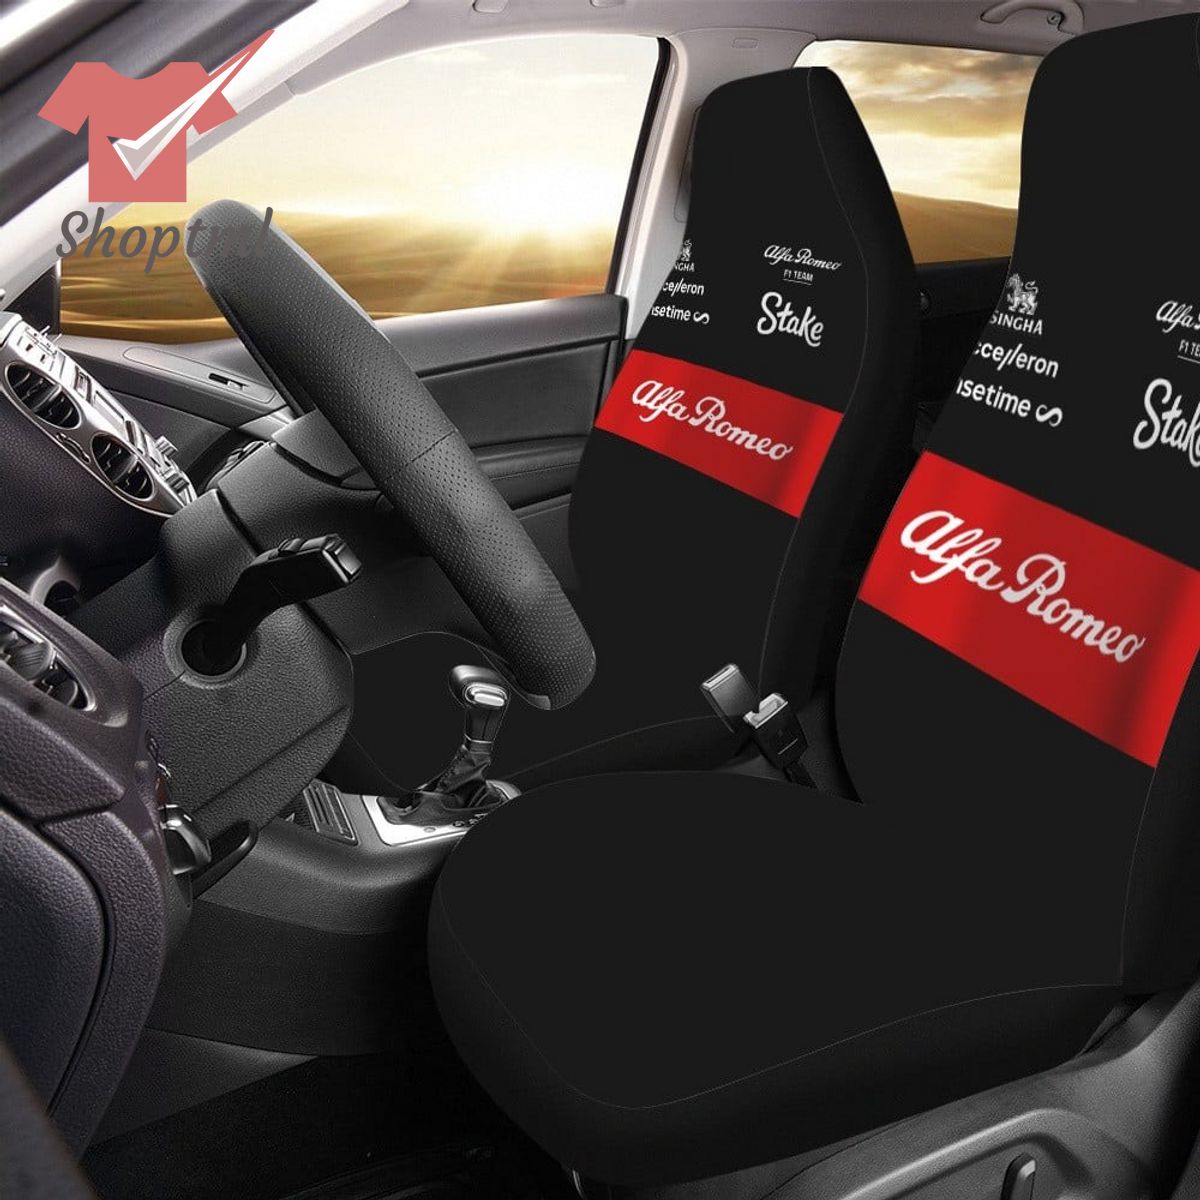 Alfa Romeo F1 Team Car Seat Cover